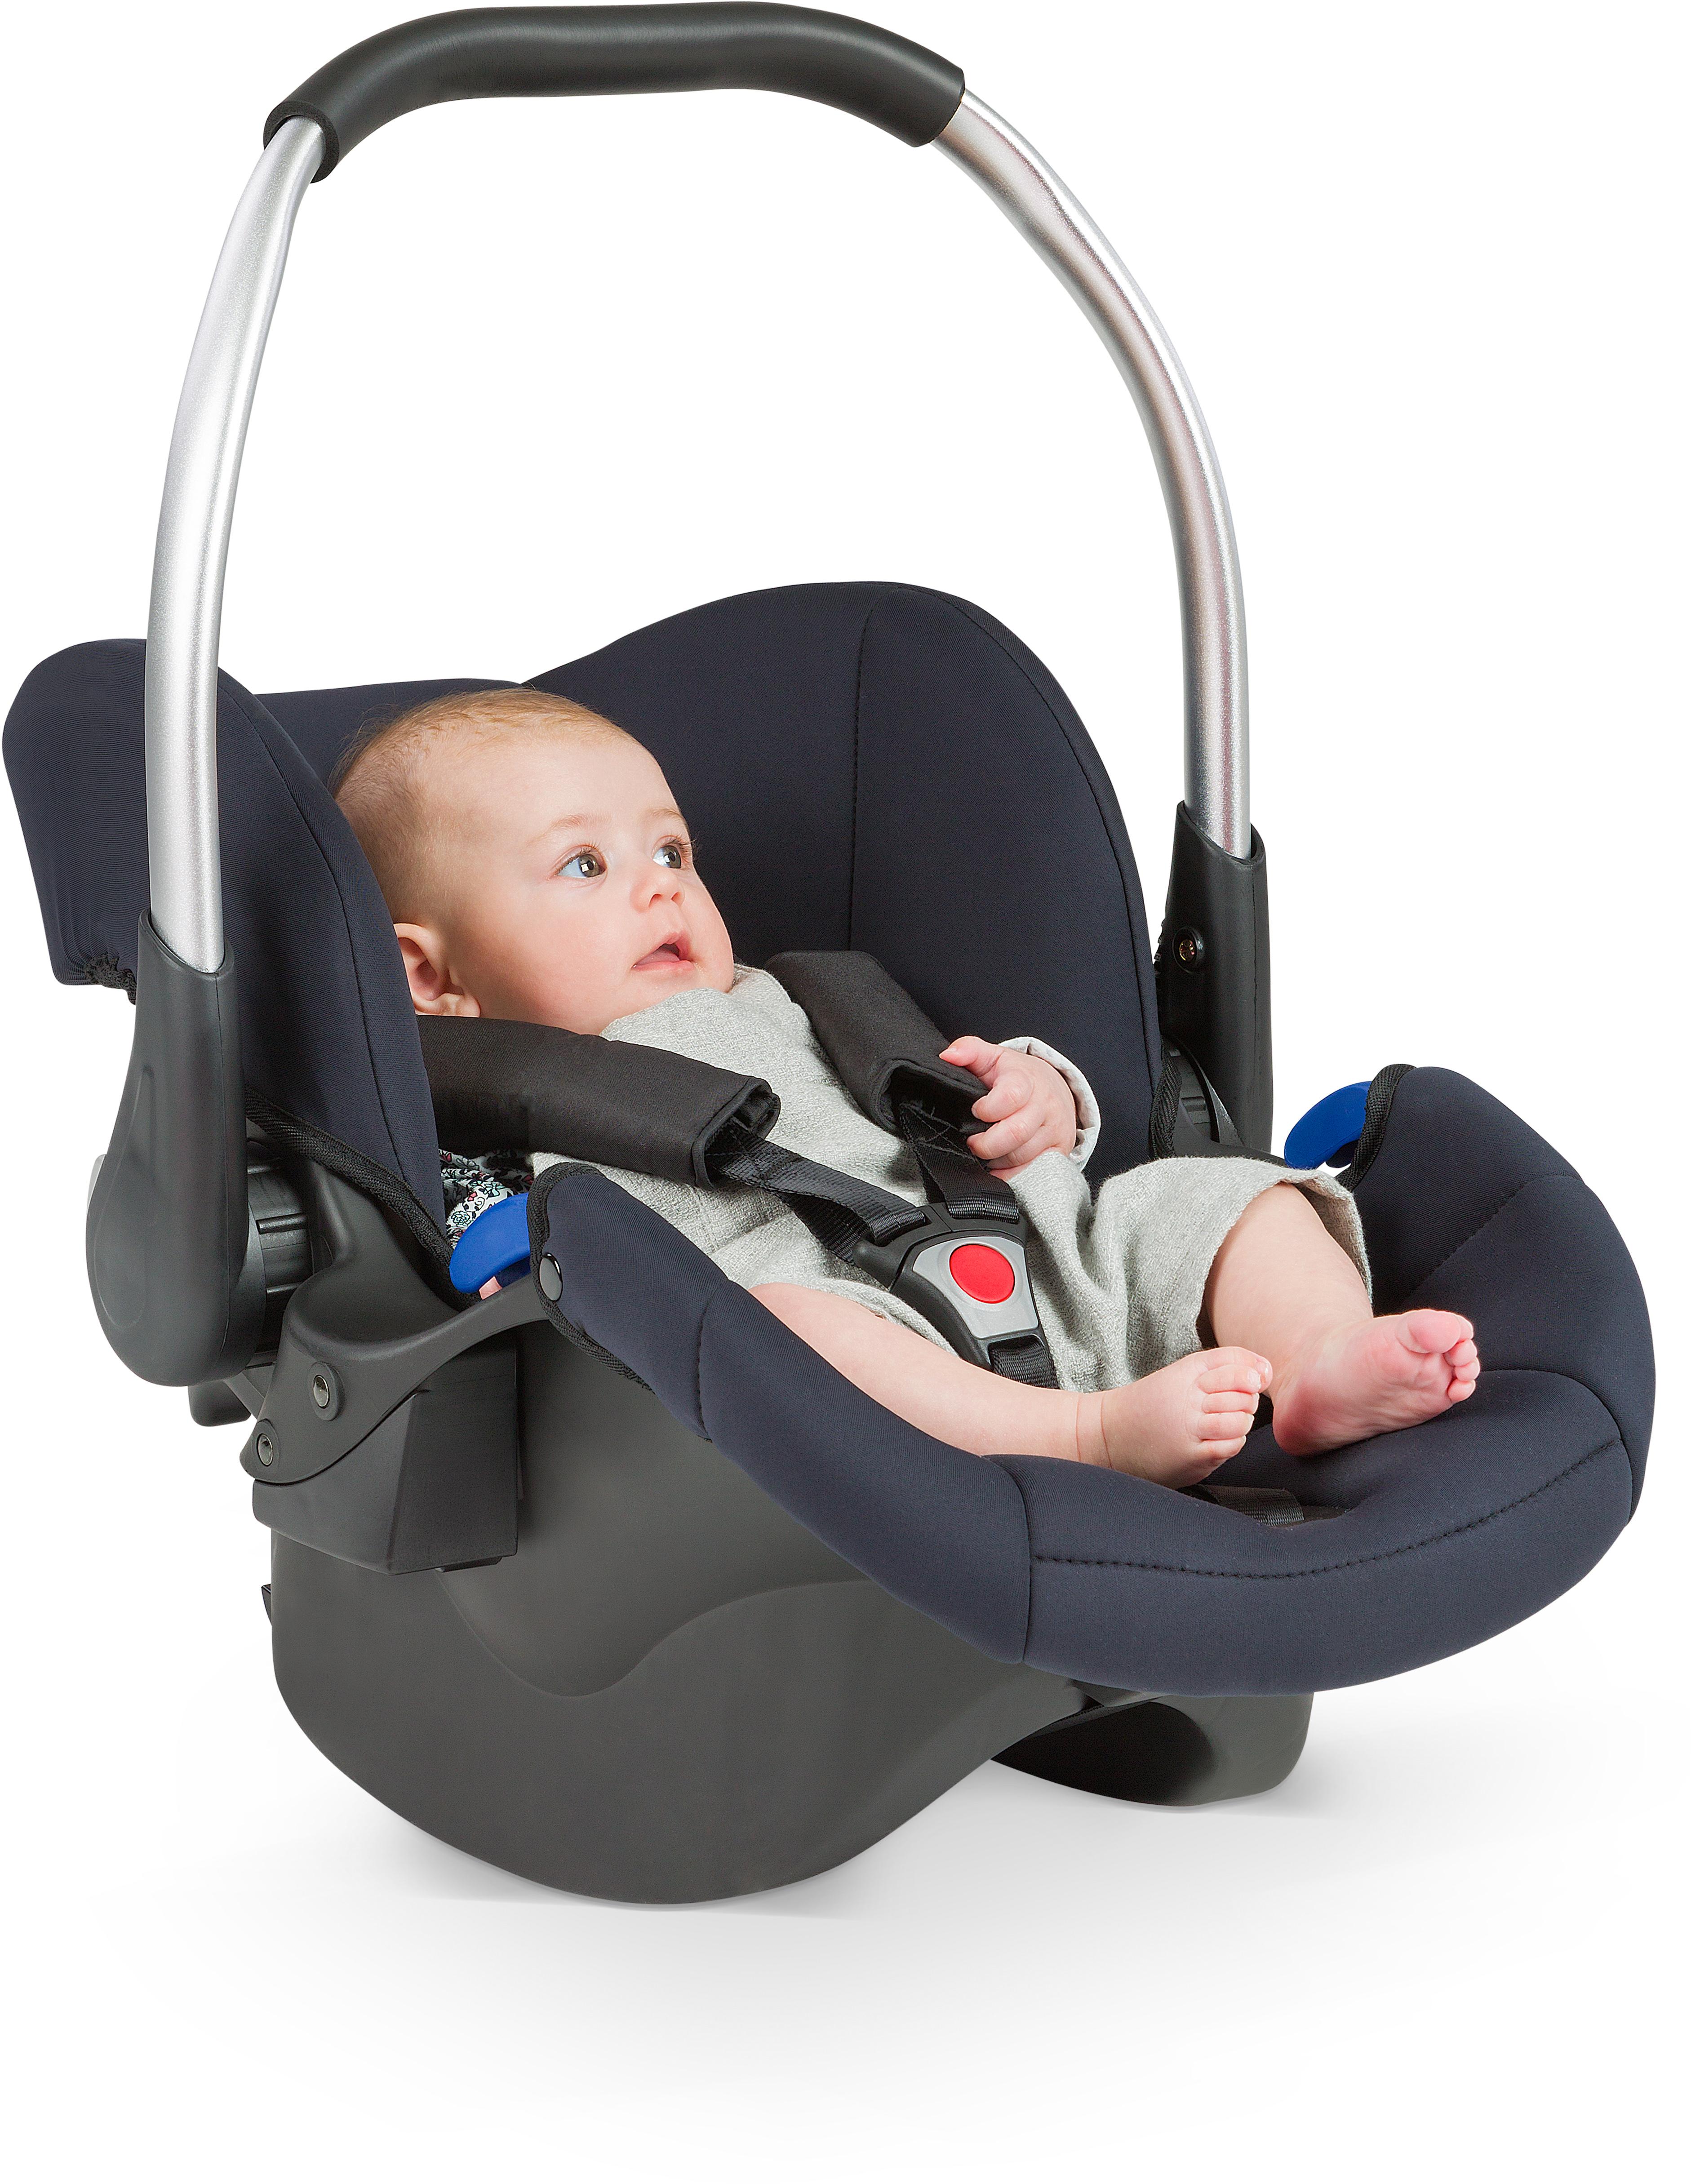 Hauck Comfort Fix Baby Car Seat - Black